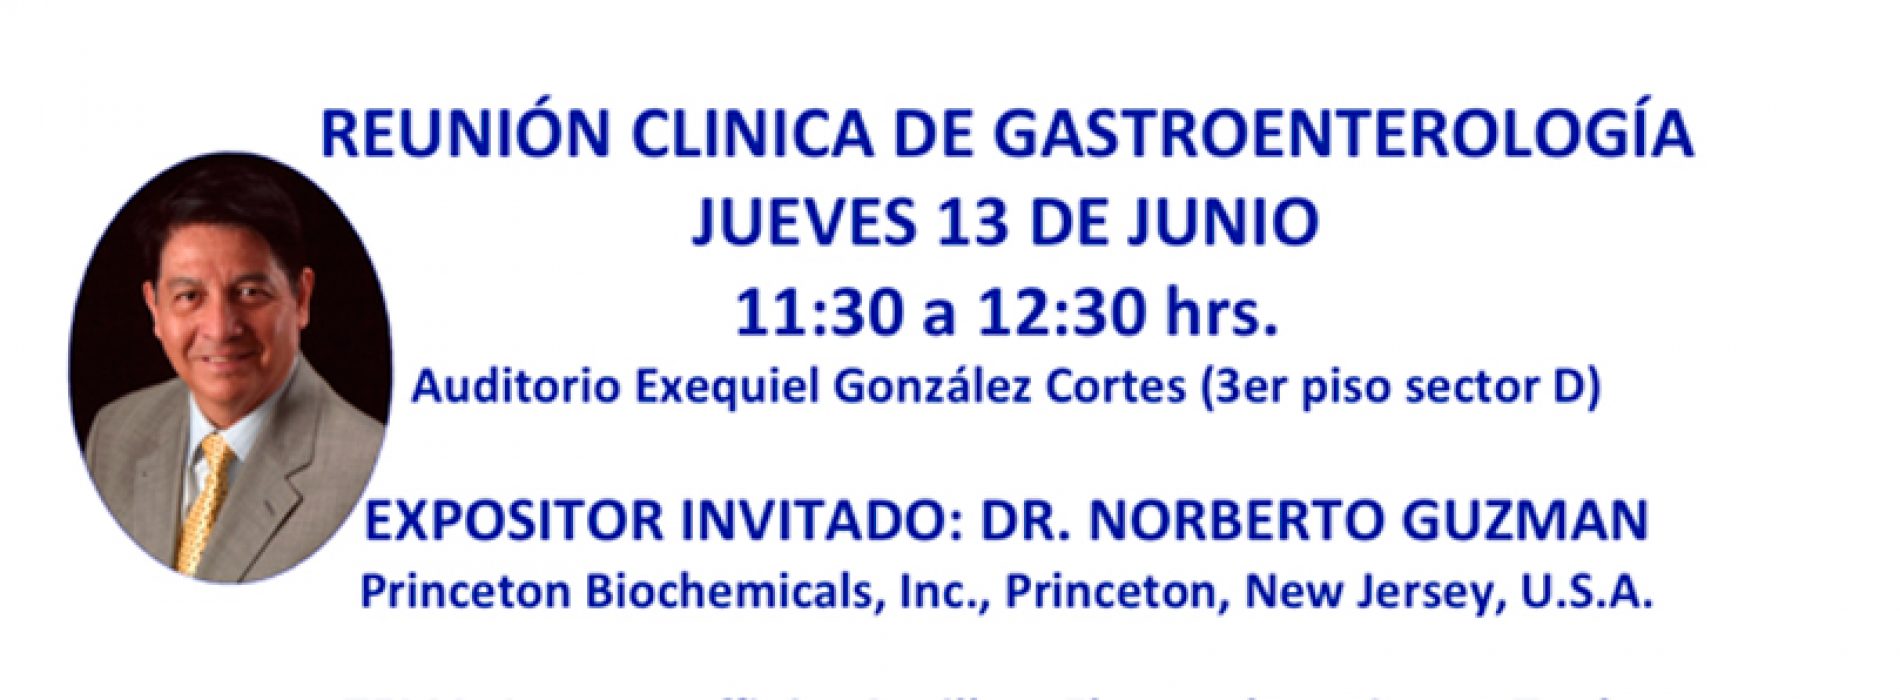 Reunión Clínica de Gastroenterología – Jueves 13 de Junio